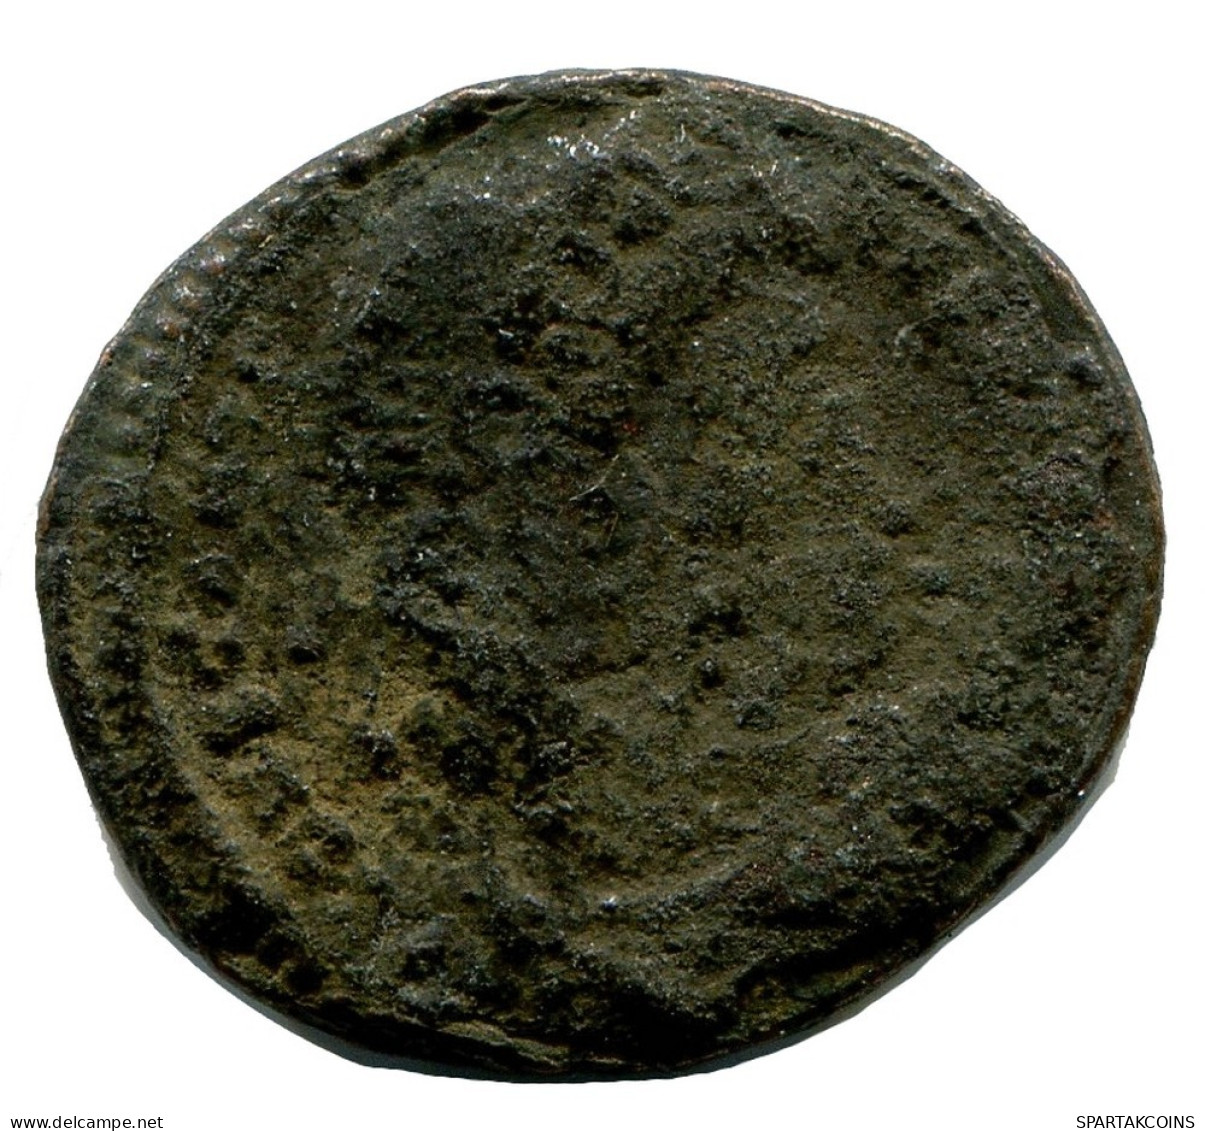 ROMAN Coin MINTED IN ALEKSANDRIA FOUND IN IHNASYAH HOARD EGYPT #ANC10180.14.U.A - Der Christlischen Kaiser (307 / 363)